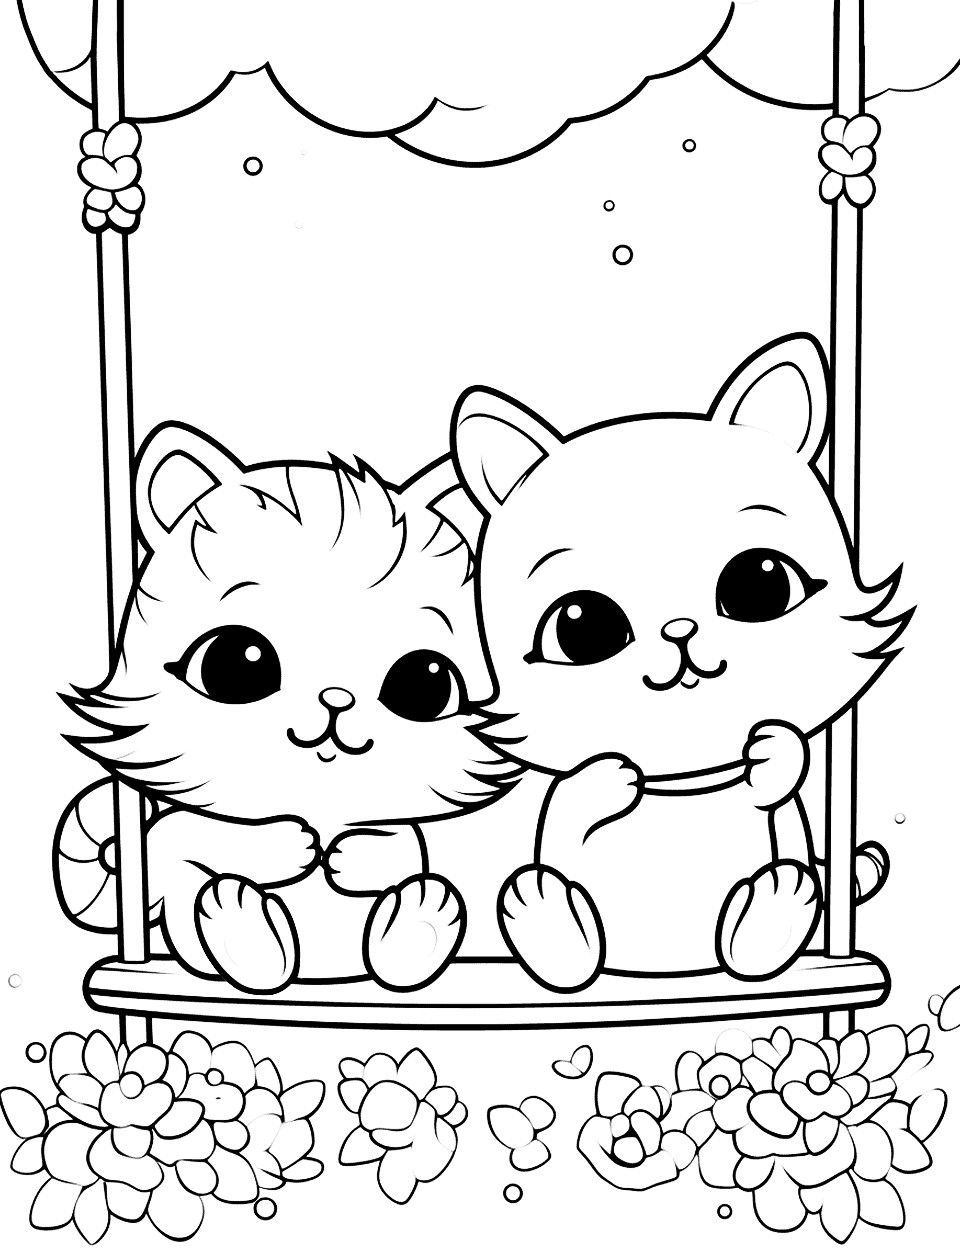 Cute BFF Cats on a Swing Kawaii Coloring Page - Two Kawaii cat besties enjoying a fun swing ride.